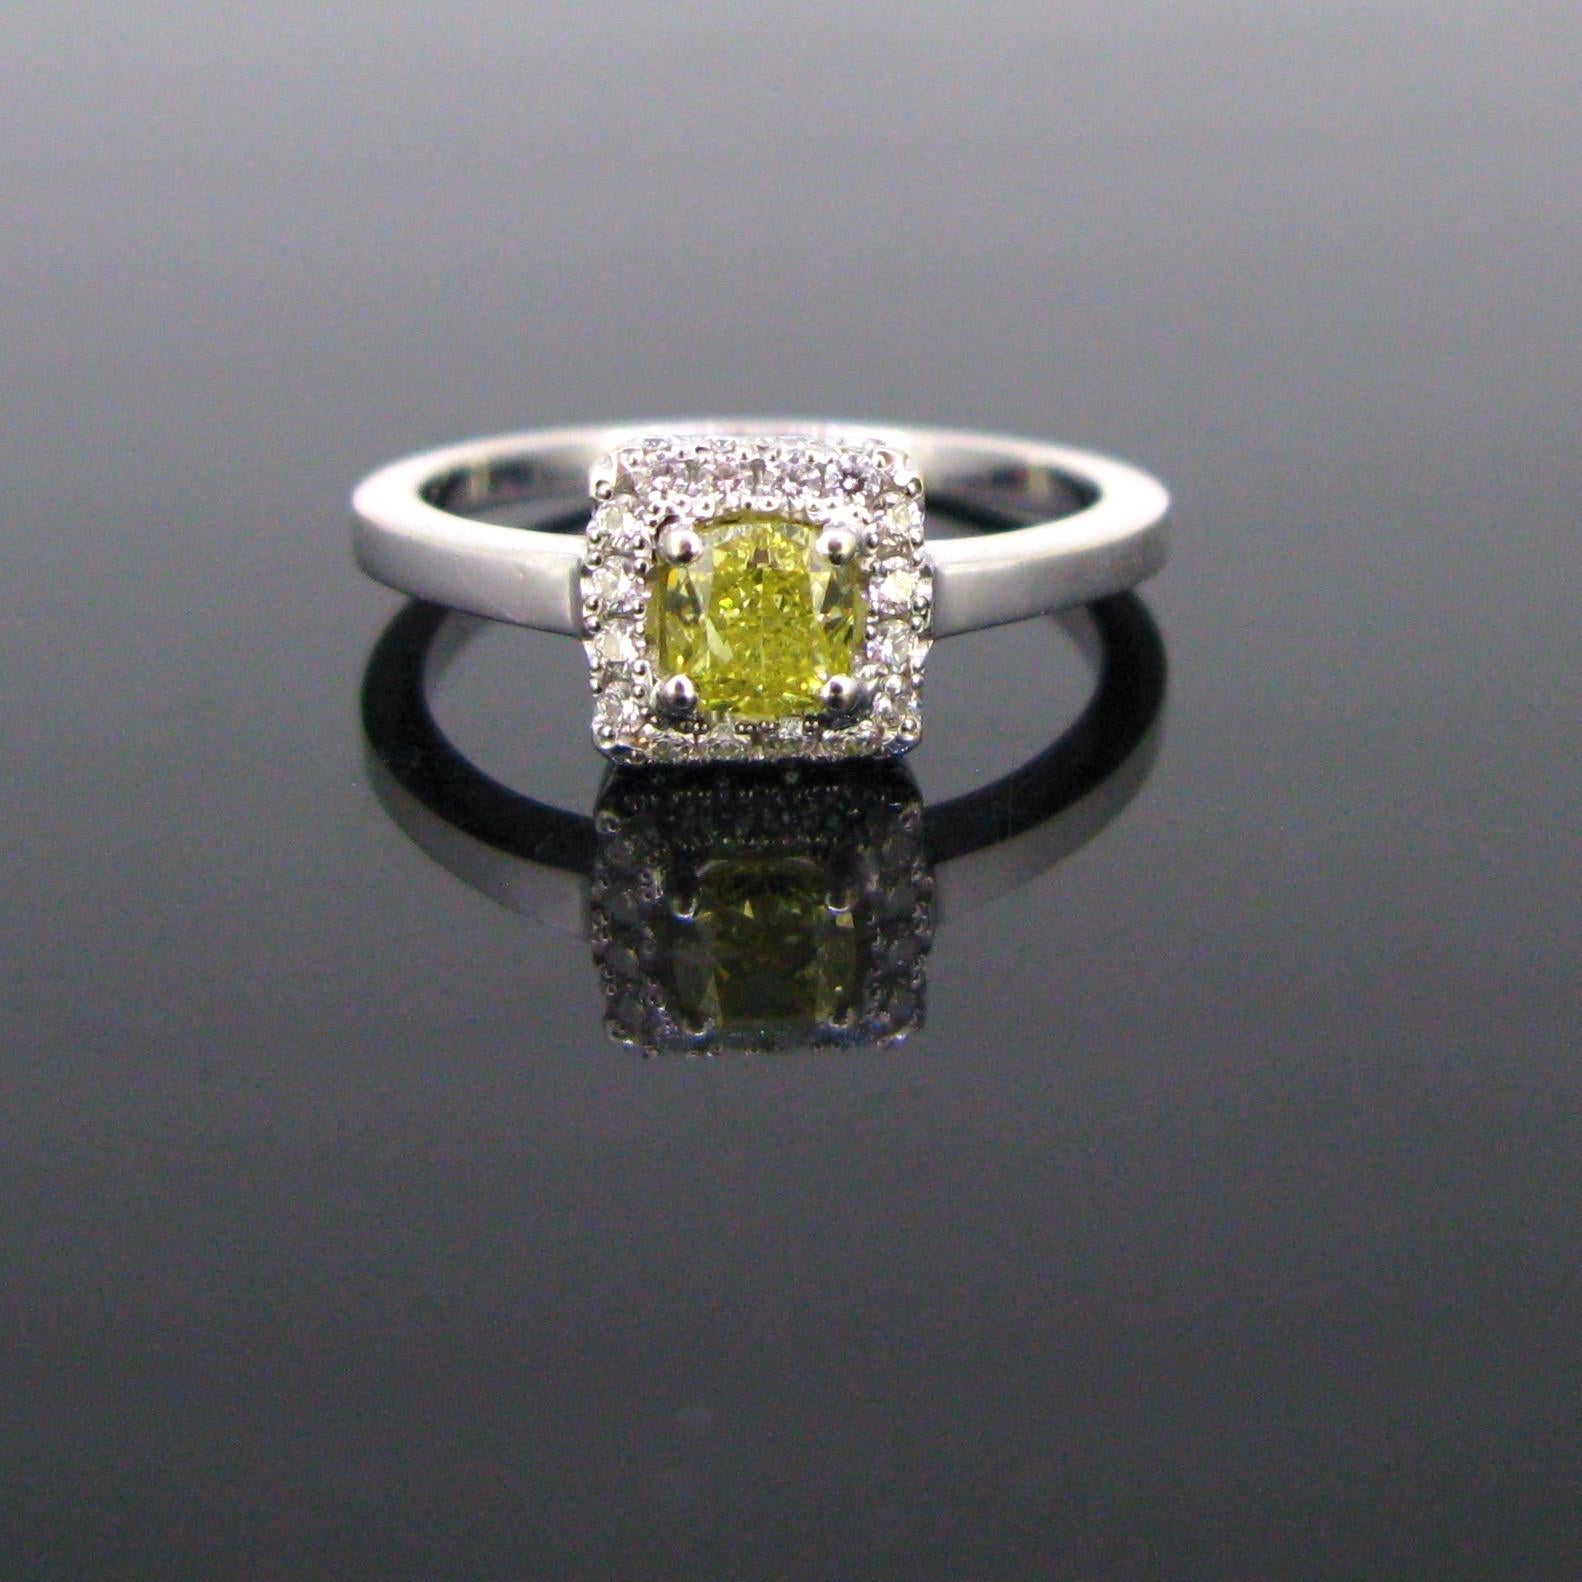 Dieser zeitlose Ring ist mit einem intensiv gelben Fancy-Diamanten von etwa 0,50 ct geschmückt. Er ist mit Diamanten im Brillantschliff umrahmt. Die Galerie ist ebenfalls mit Diamanten besetzt. Dieser Ring ist der perfekte Verlobungsring. Sie ist im